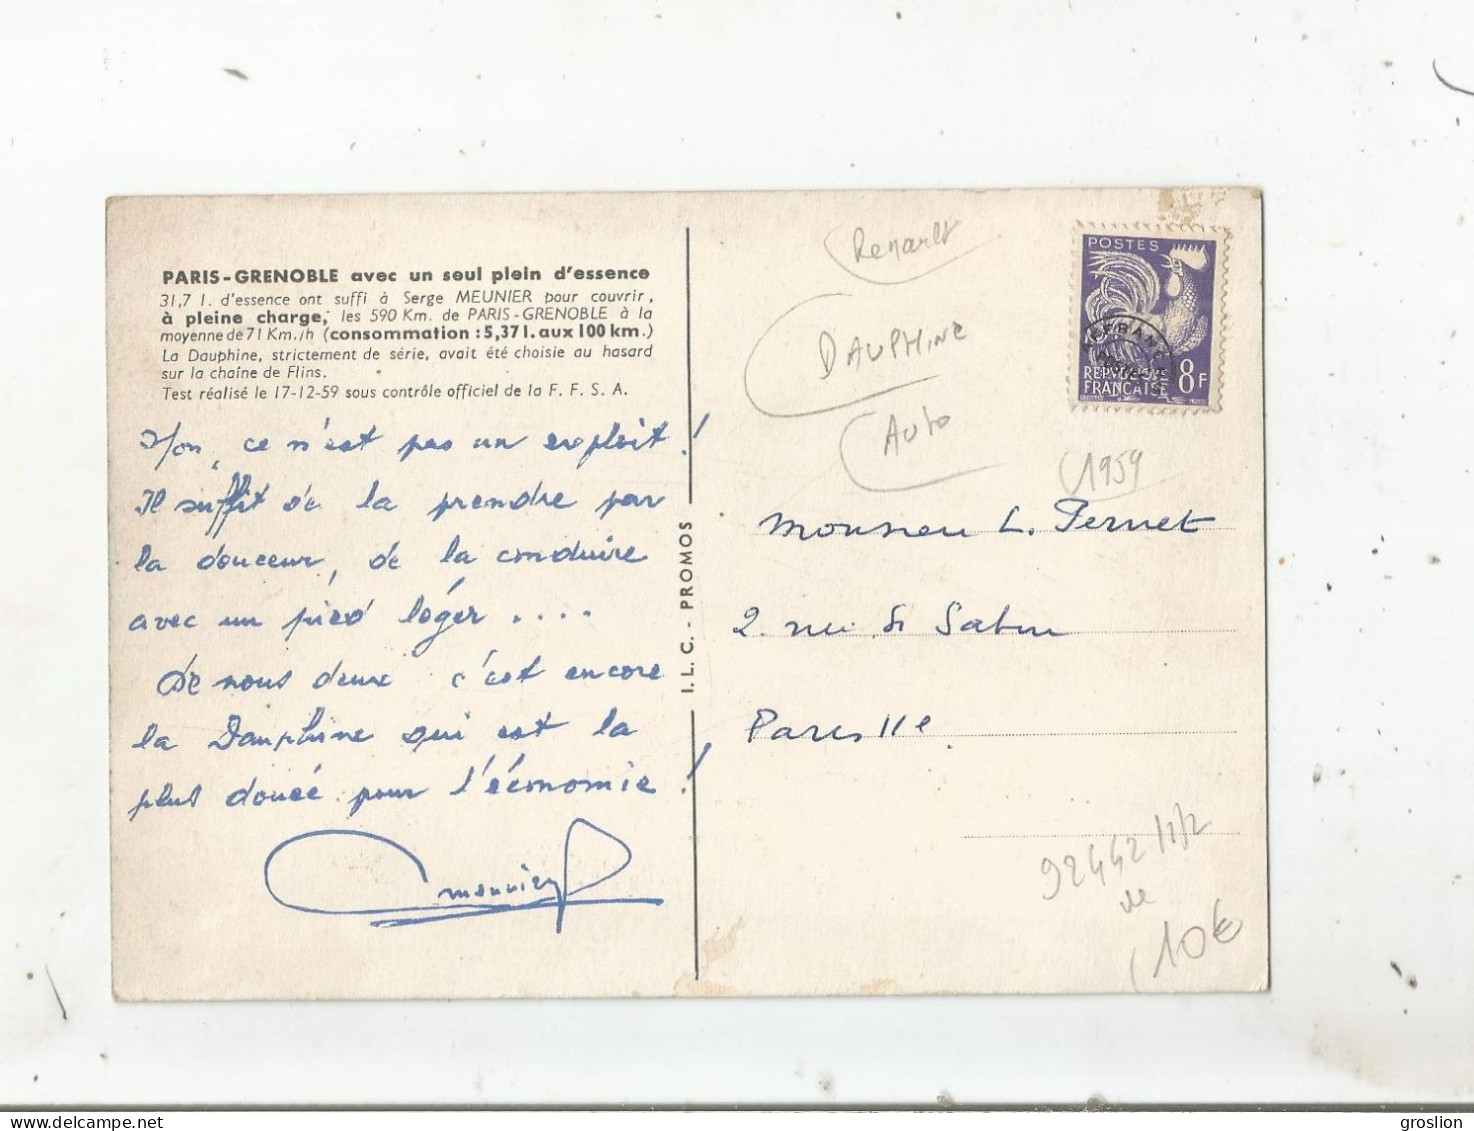 RENAULT DAUPHINE PARIS GRENOBLE AVEC UN SEUL PLEIN D'ESSENCE 1959 - Voitures De Tourisme